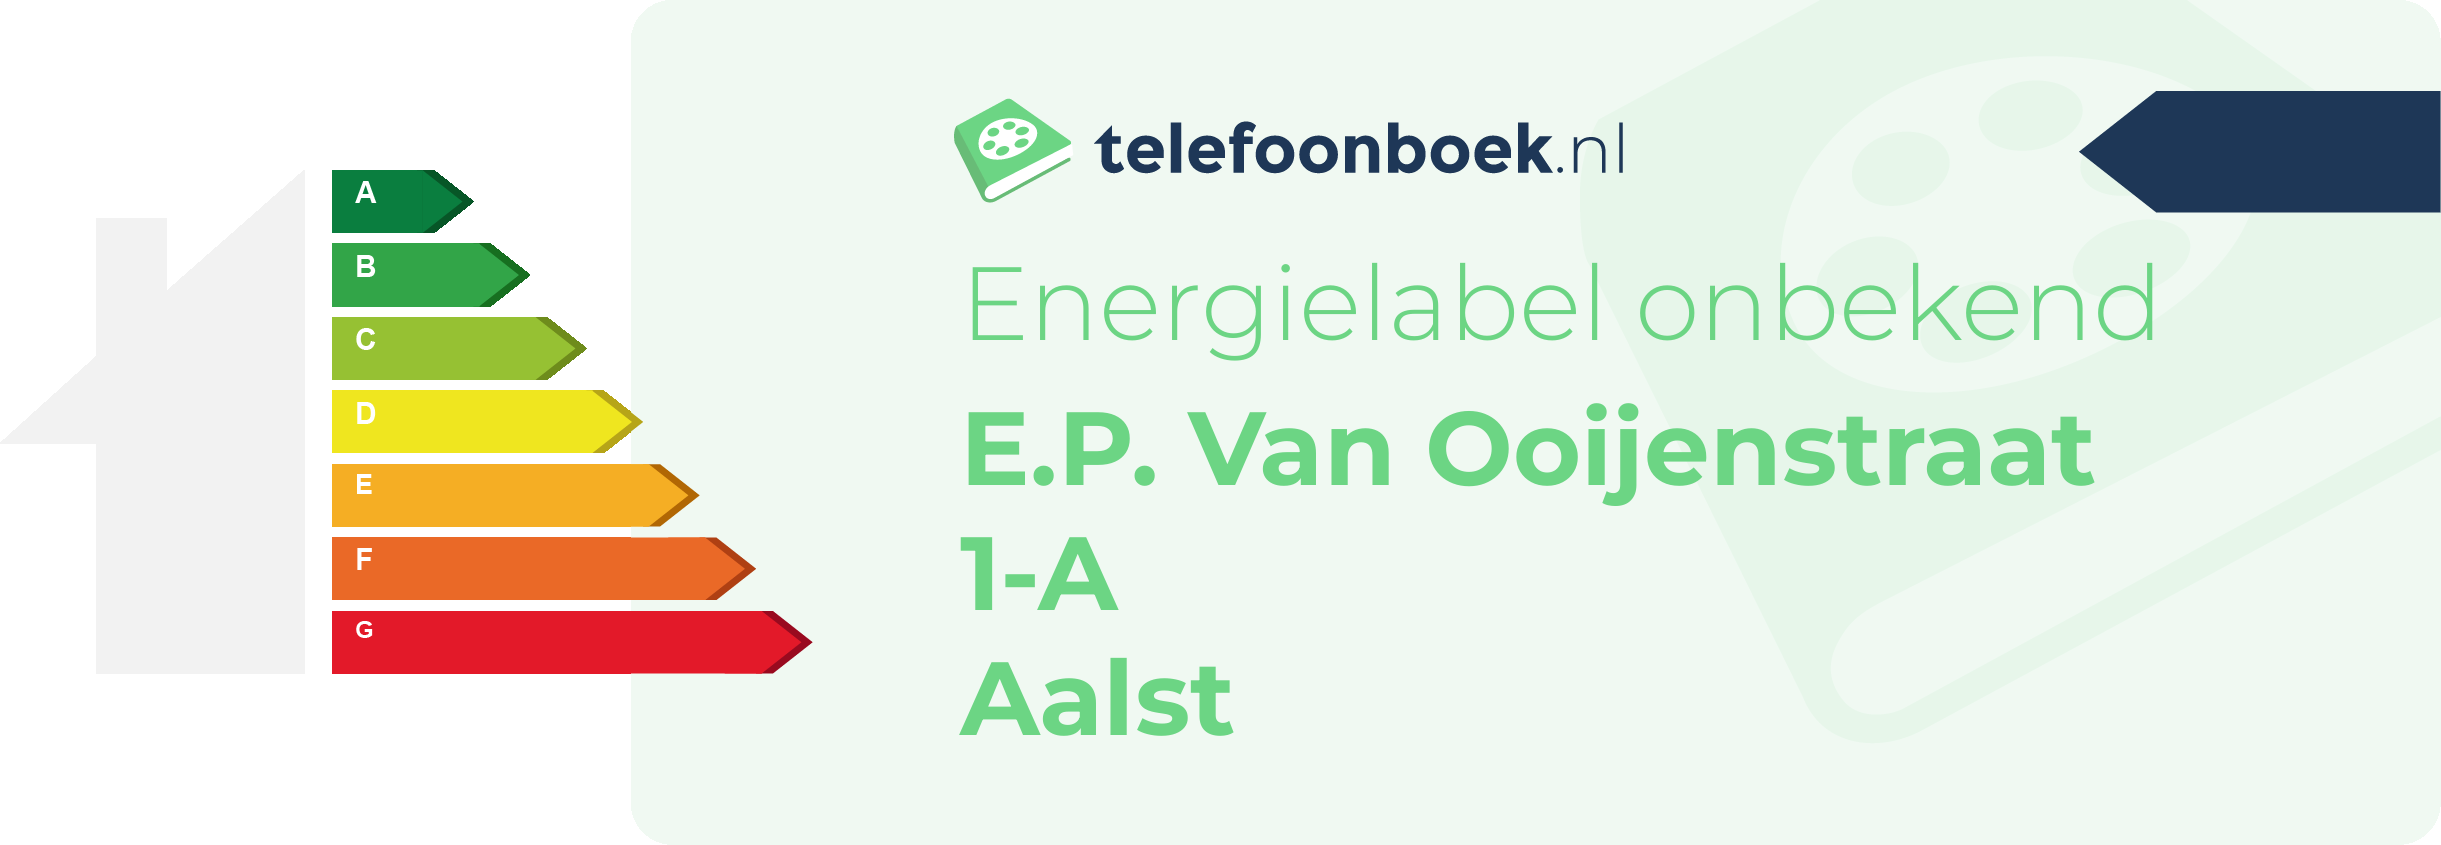 Energielabel E.P. Van Ooijenstraat 1-A Aalst